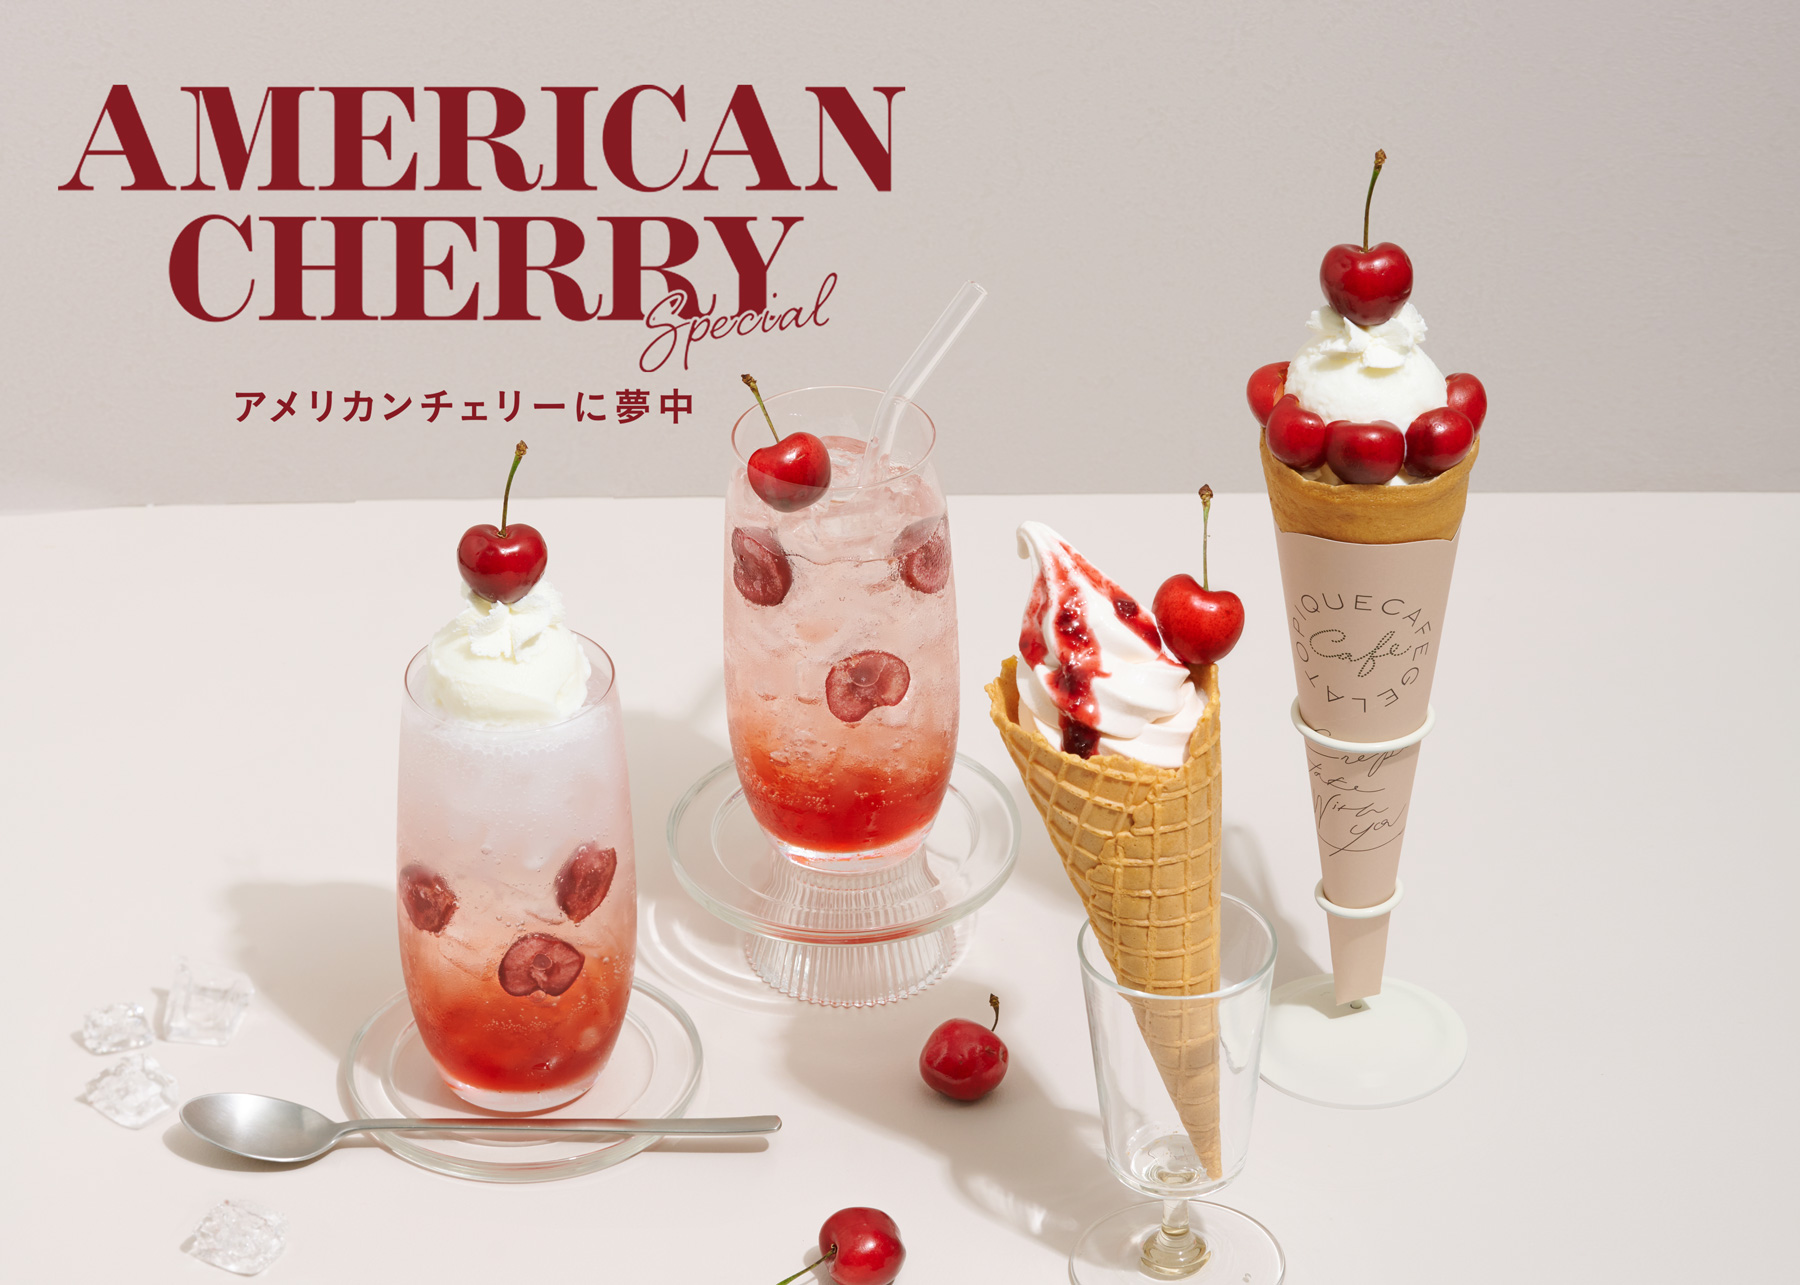 Gelato Pique Cafe ジェラート ピケ カフェ American Cherry Specialと題し 旬のアメリカンチェリー を使った贅沢スイーツを発表 株式会社マッシュホールディングスのプレスリリース